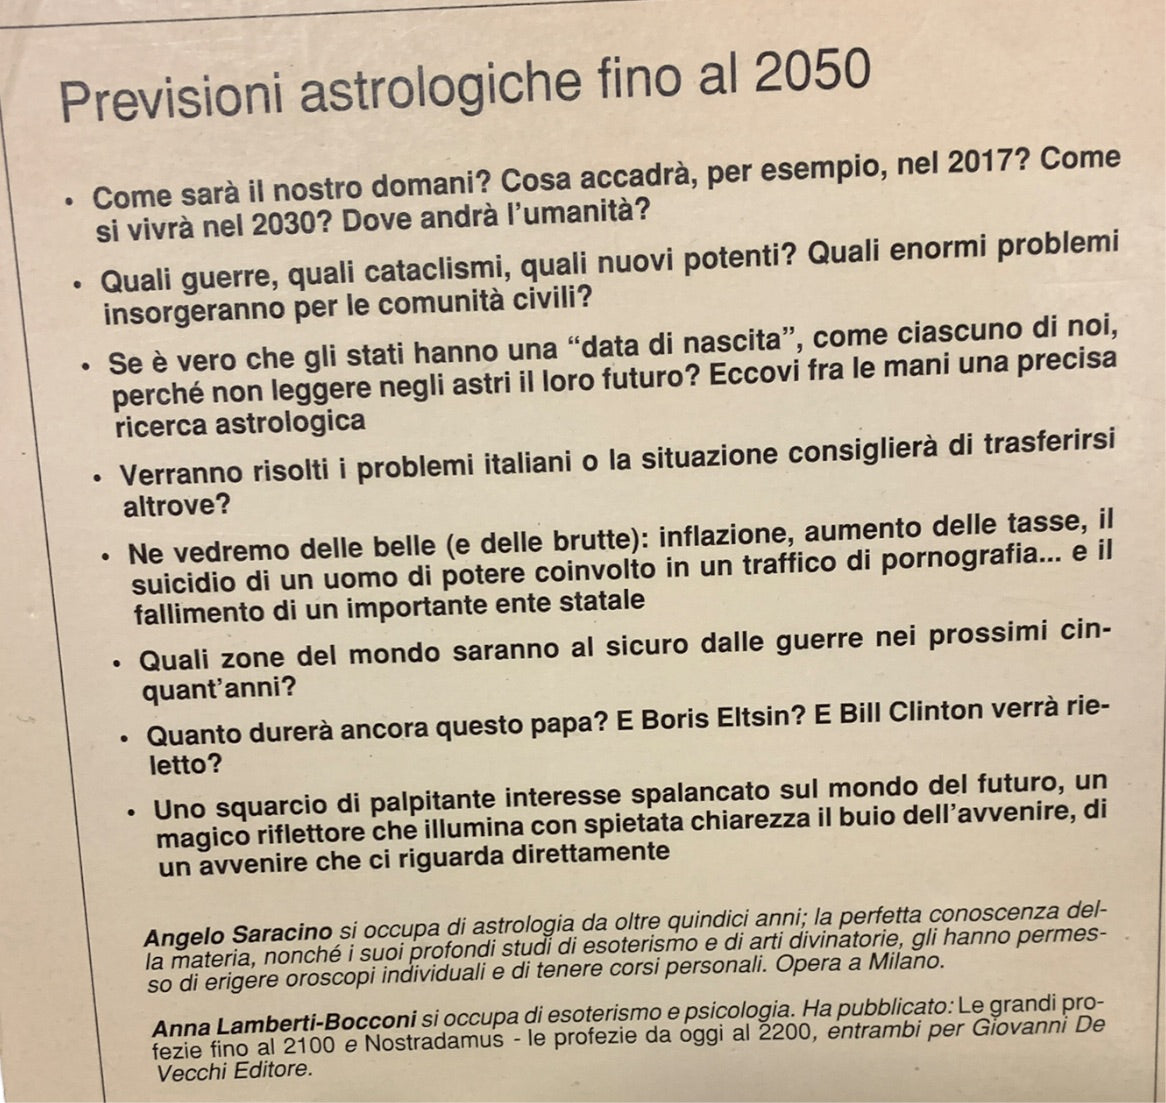 Previsioni astrologiche fino al 2050